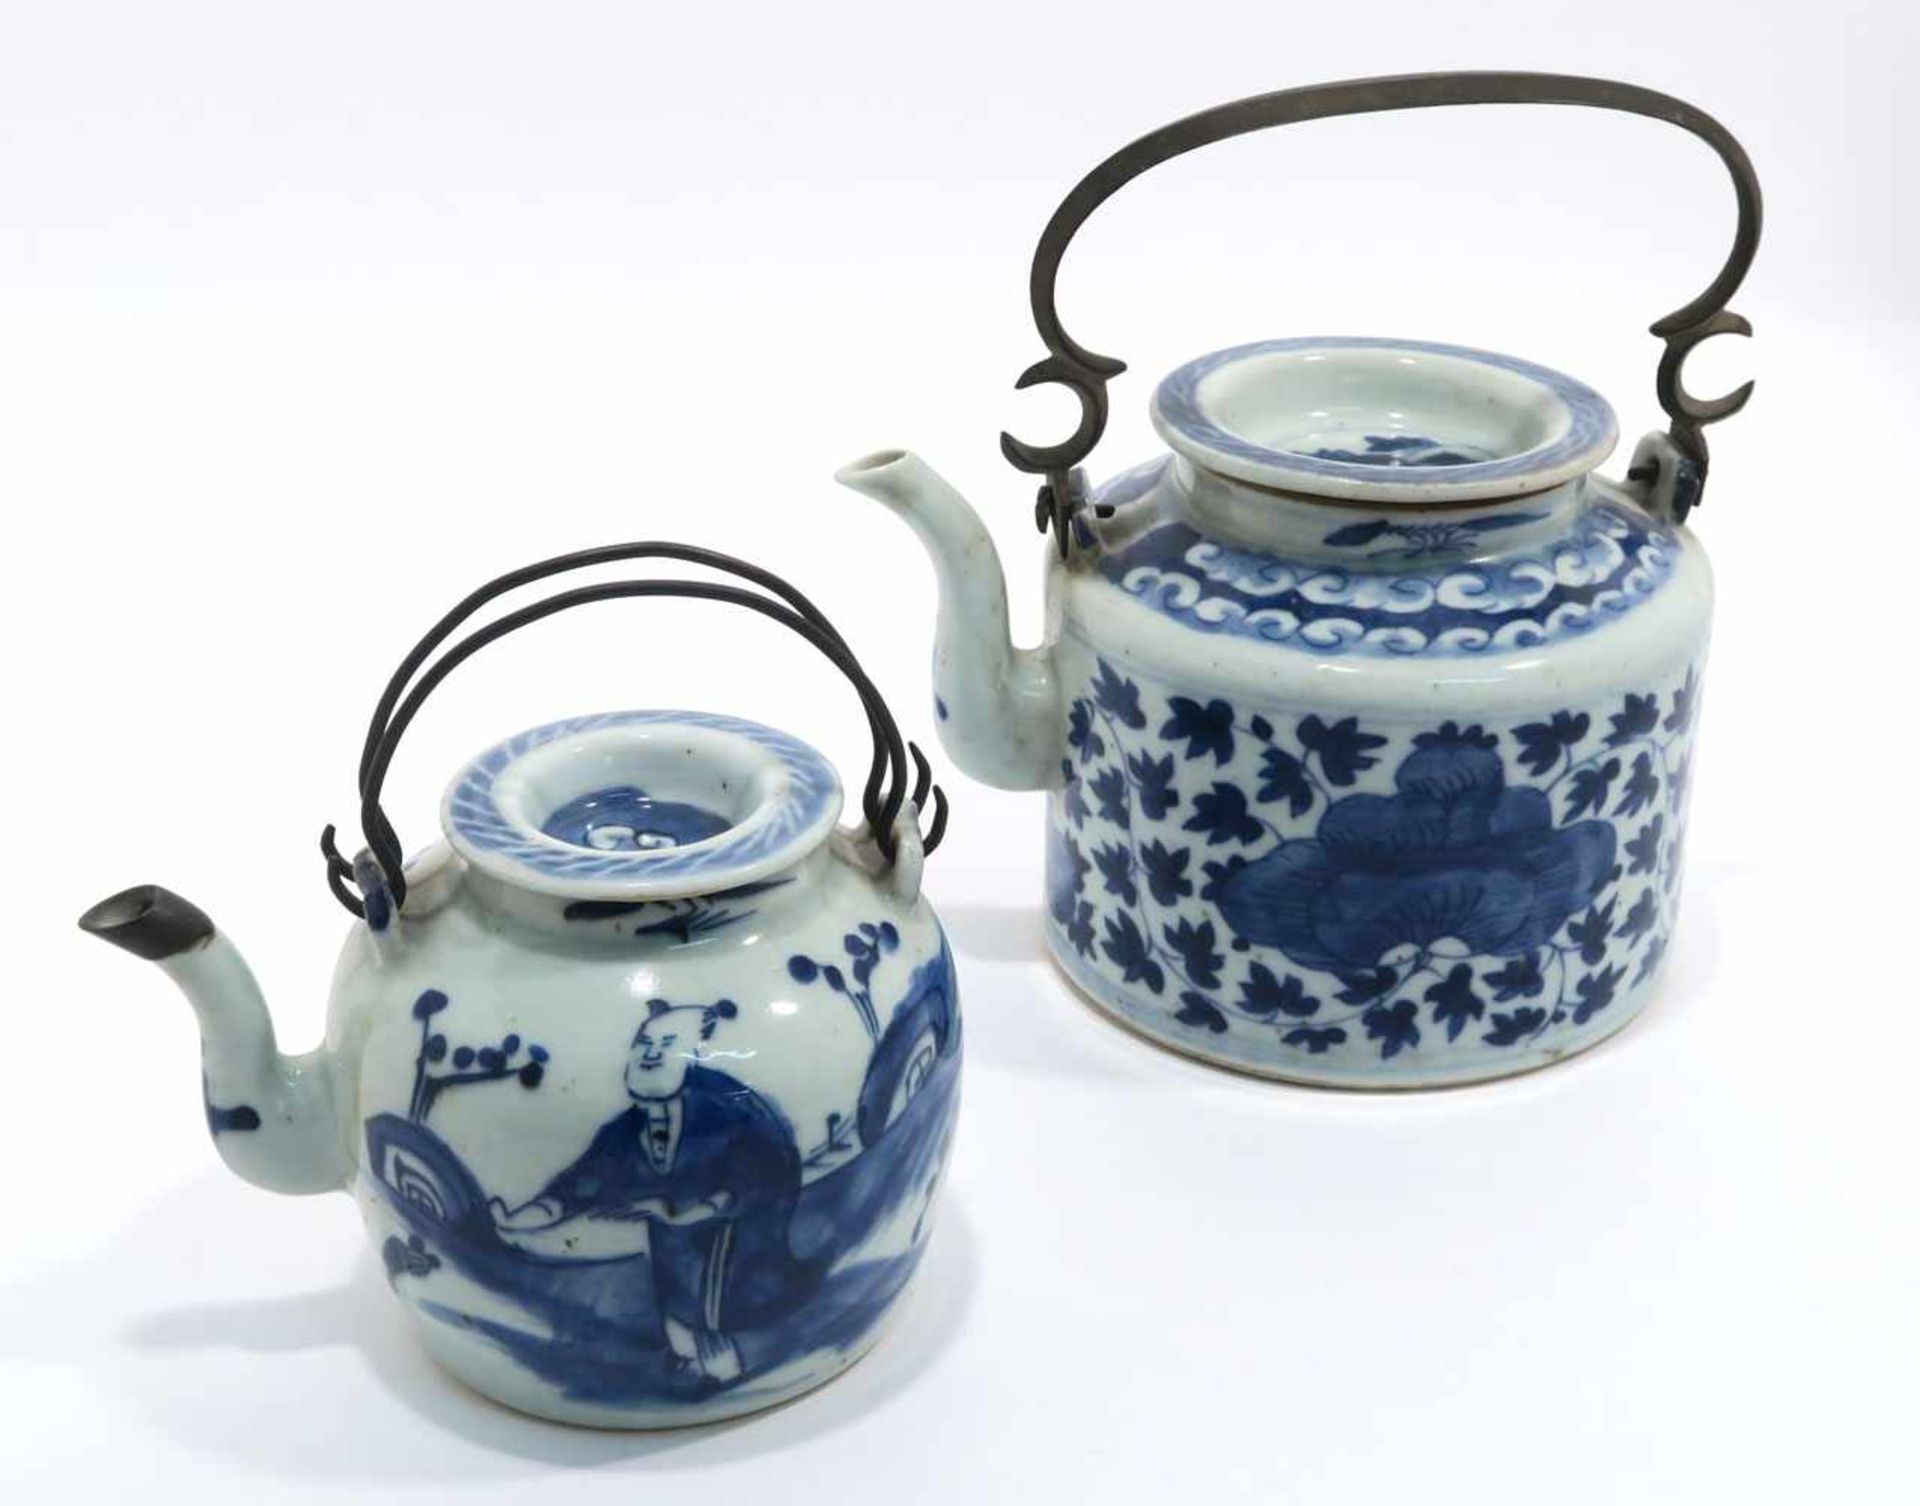 Zwei TeekannenChina. Porzellan. Floraler bzw. figürlicher Blaudekor. Metallhenkel. H. 11,5 cm bzw.